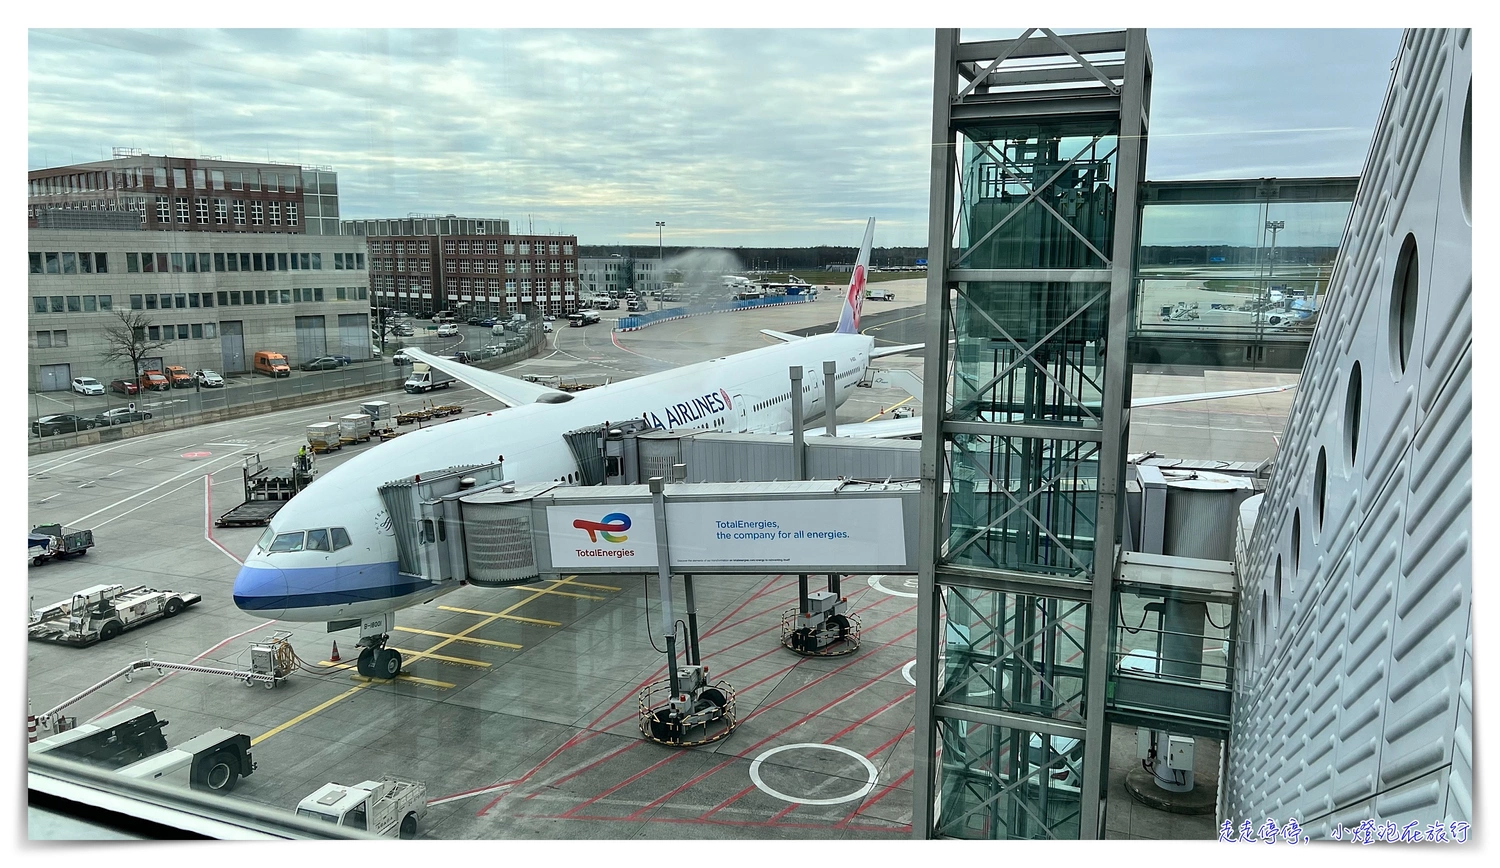 2023華航台北法蘭克福來回搭乘評價｜一本票接歐洲內陸線轉機、入關證照查驗流程、777-300搭乘感受